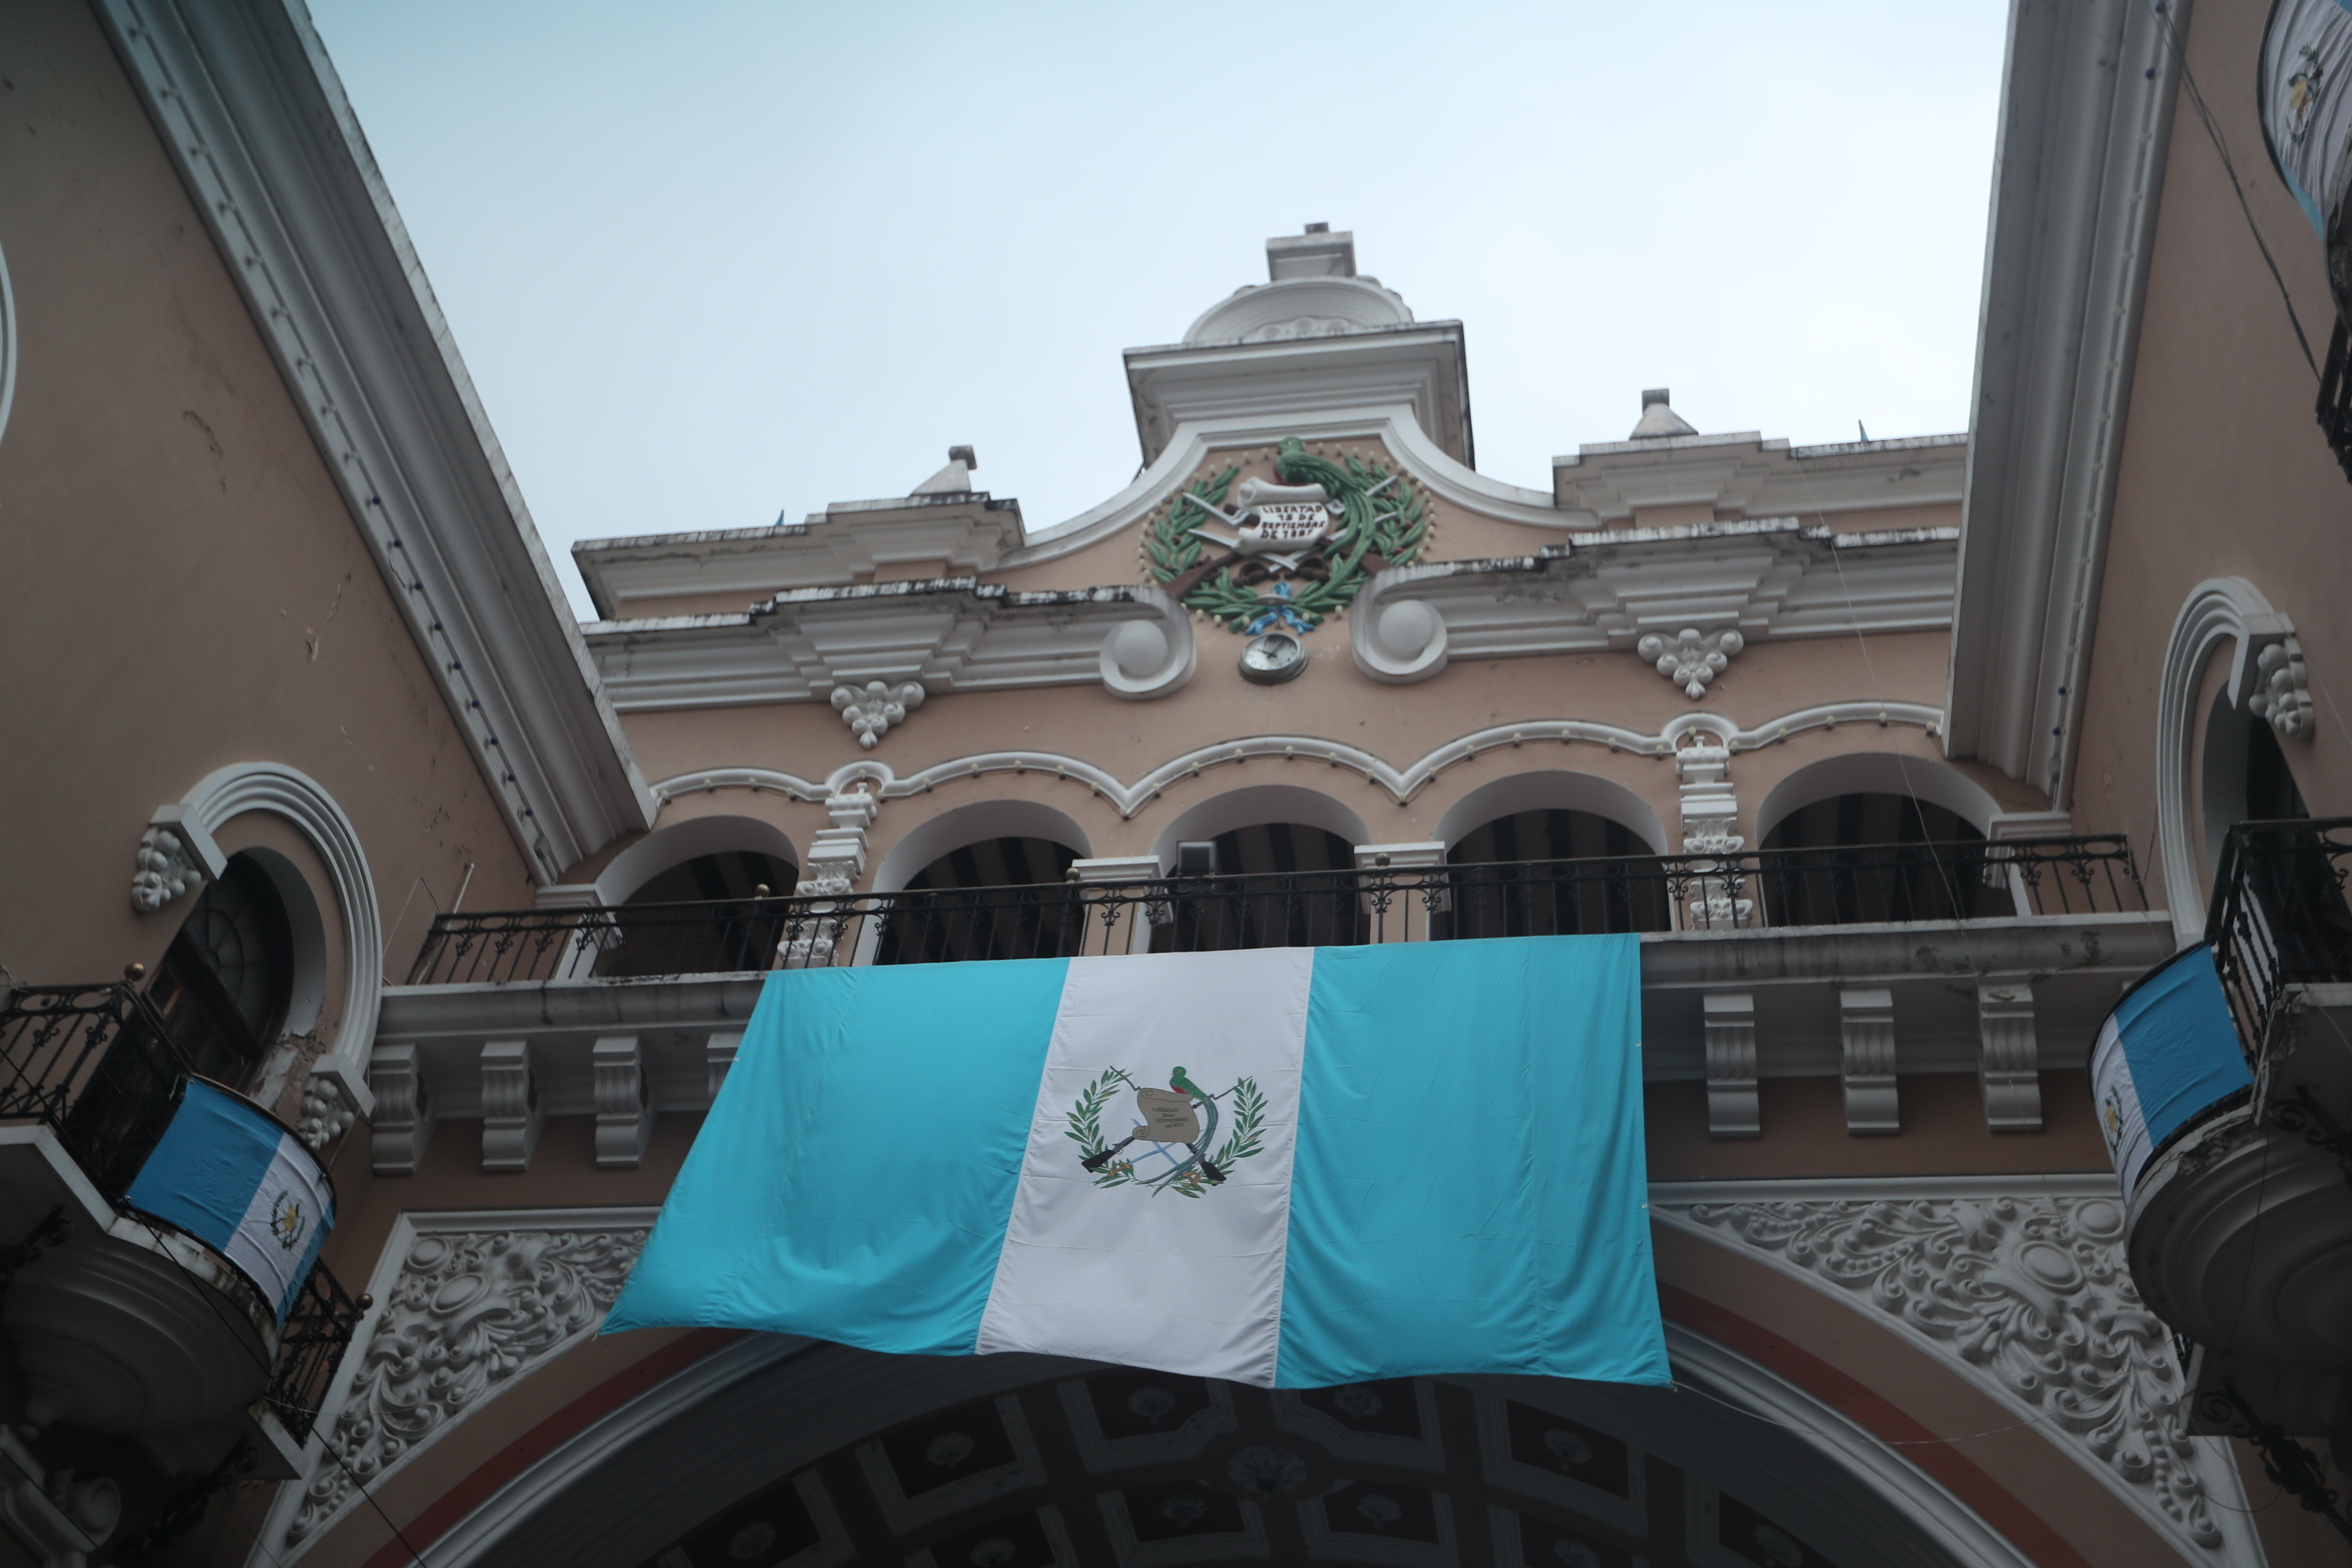 El antiguo Arco de Correos se adorna con la bandera nacional en honor a las fiestas patrias y el fervor de cientor de guatemaltecos. 

(Foto Prensa Libre: Victoria Moreno)




